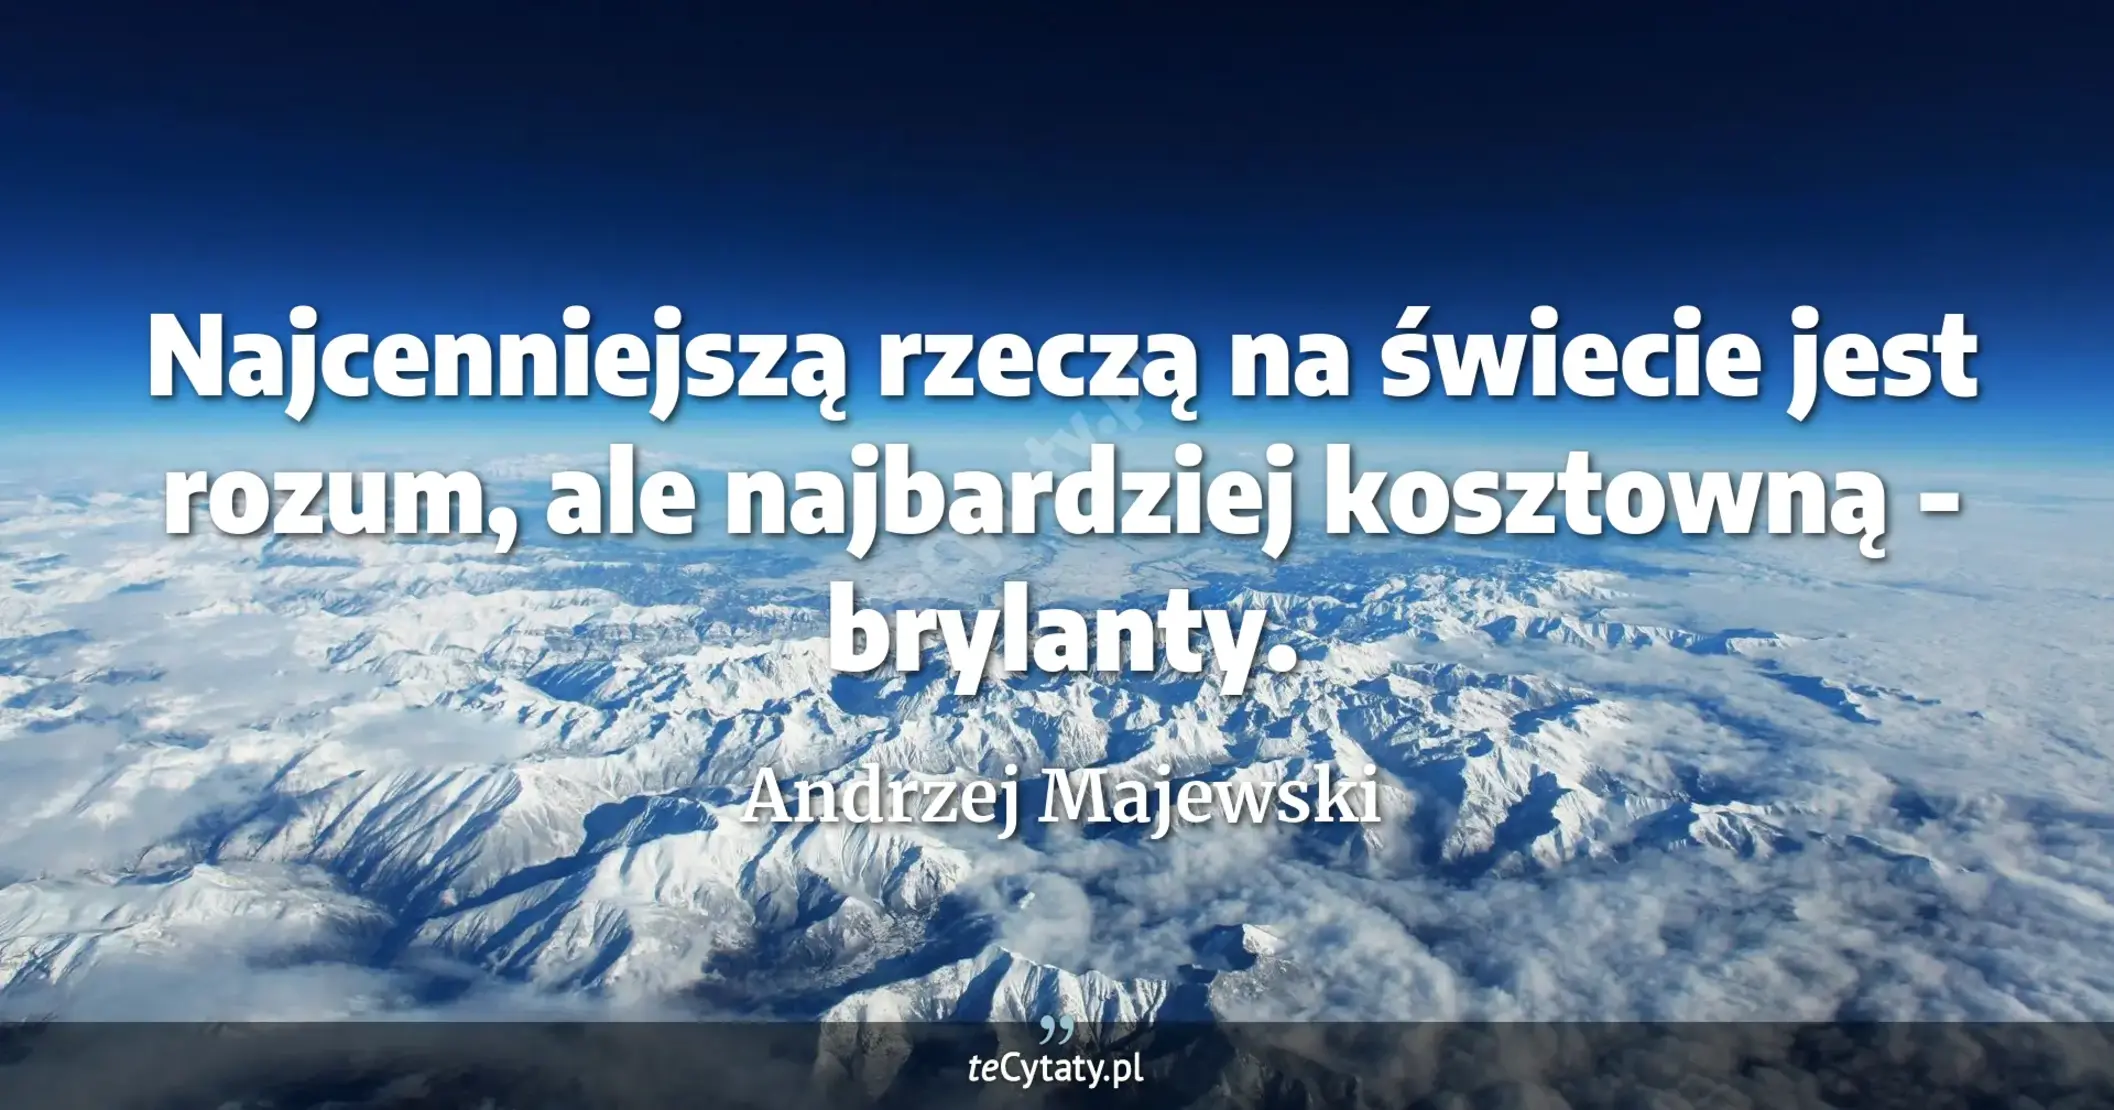 Najcenniejszą rzeczą na świecie jest rozum, ale najbardziej kosztowną - brylanty. - Andrzej Majewski